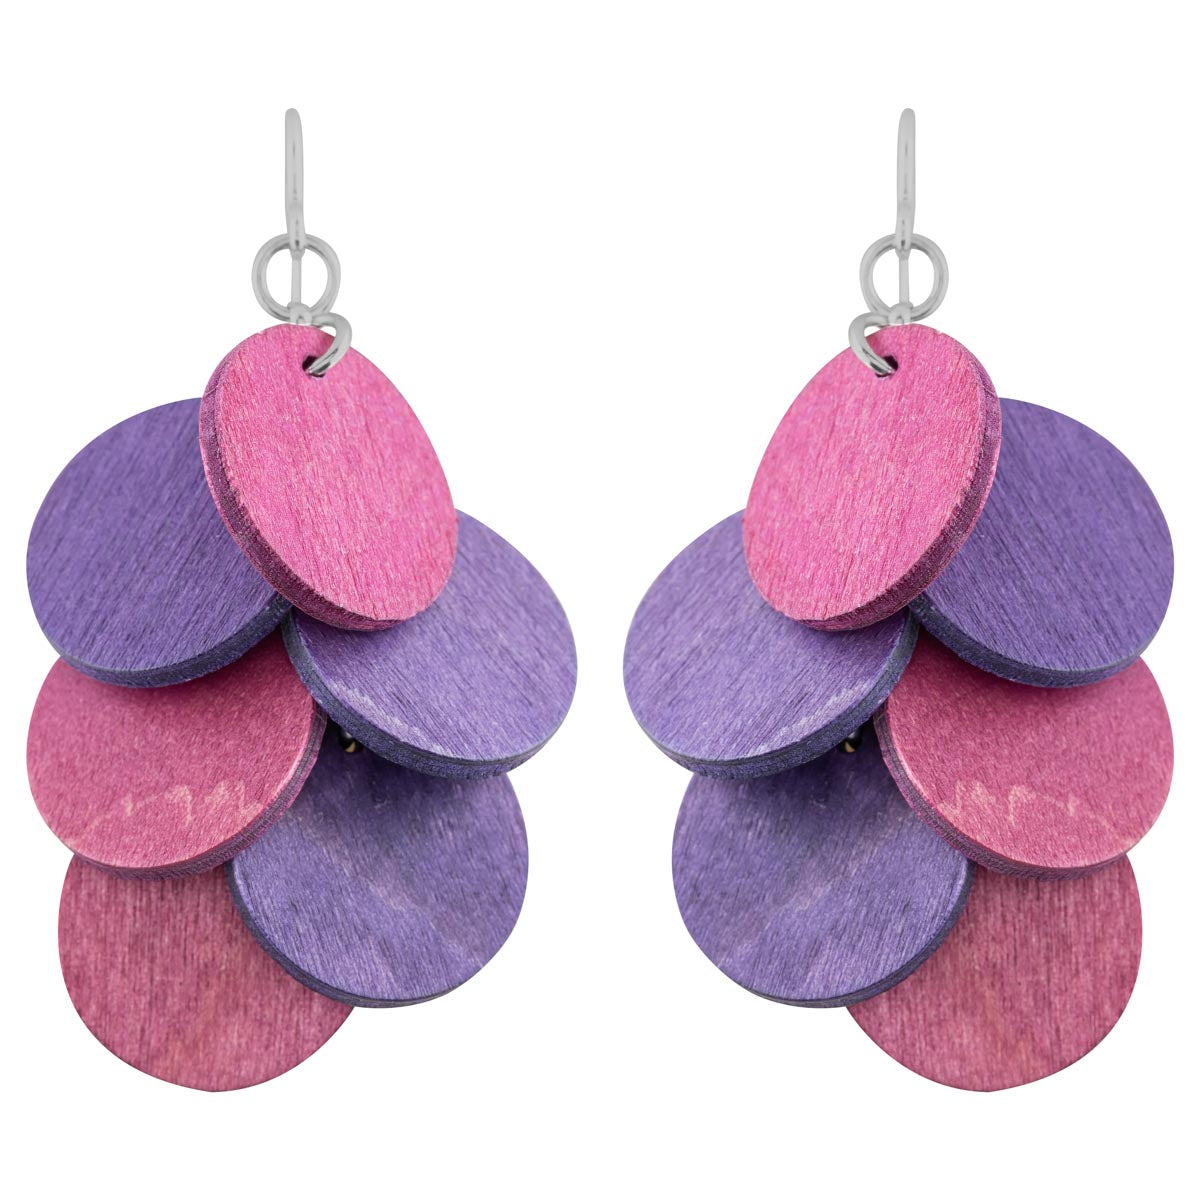 Juolukka earrings, purple